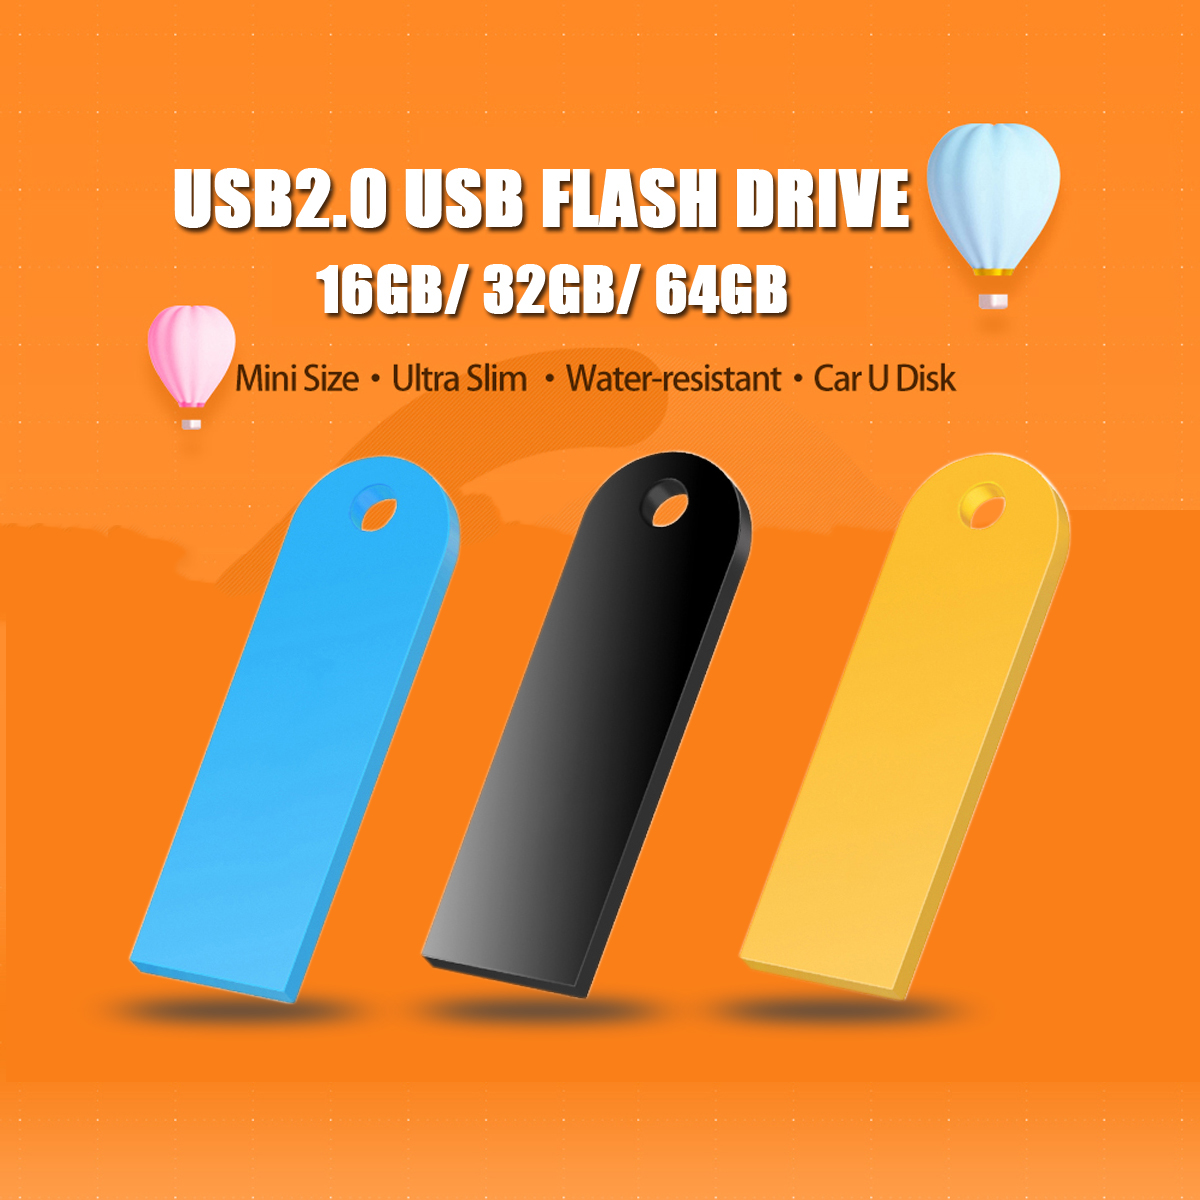 Kodak-K212-USB20-Small-USB-Flash-Drive-16GB-32GB-64GB-Memory-Stick-U-Disk-Pen-Drive-ABS-Colorful-Por-1566541-7